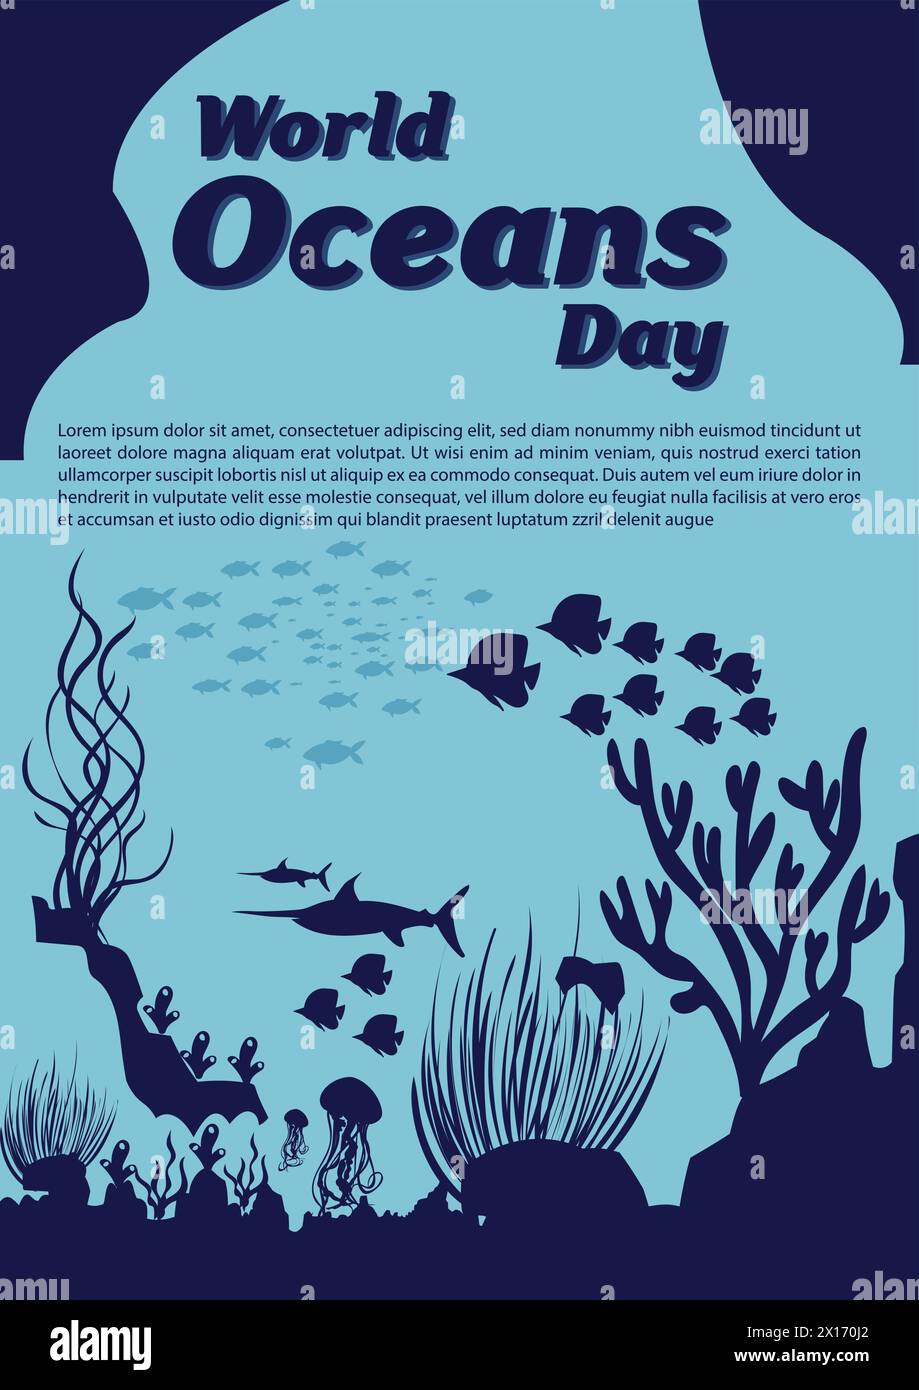 Retten wir unsere Ozeane. World Oceans Day Design mit Unterwasser Ozean, Delfin, Hai, Korallen, Meerespflanzen, stachelrochen und Schildkröte. Stock Vektor